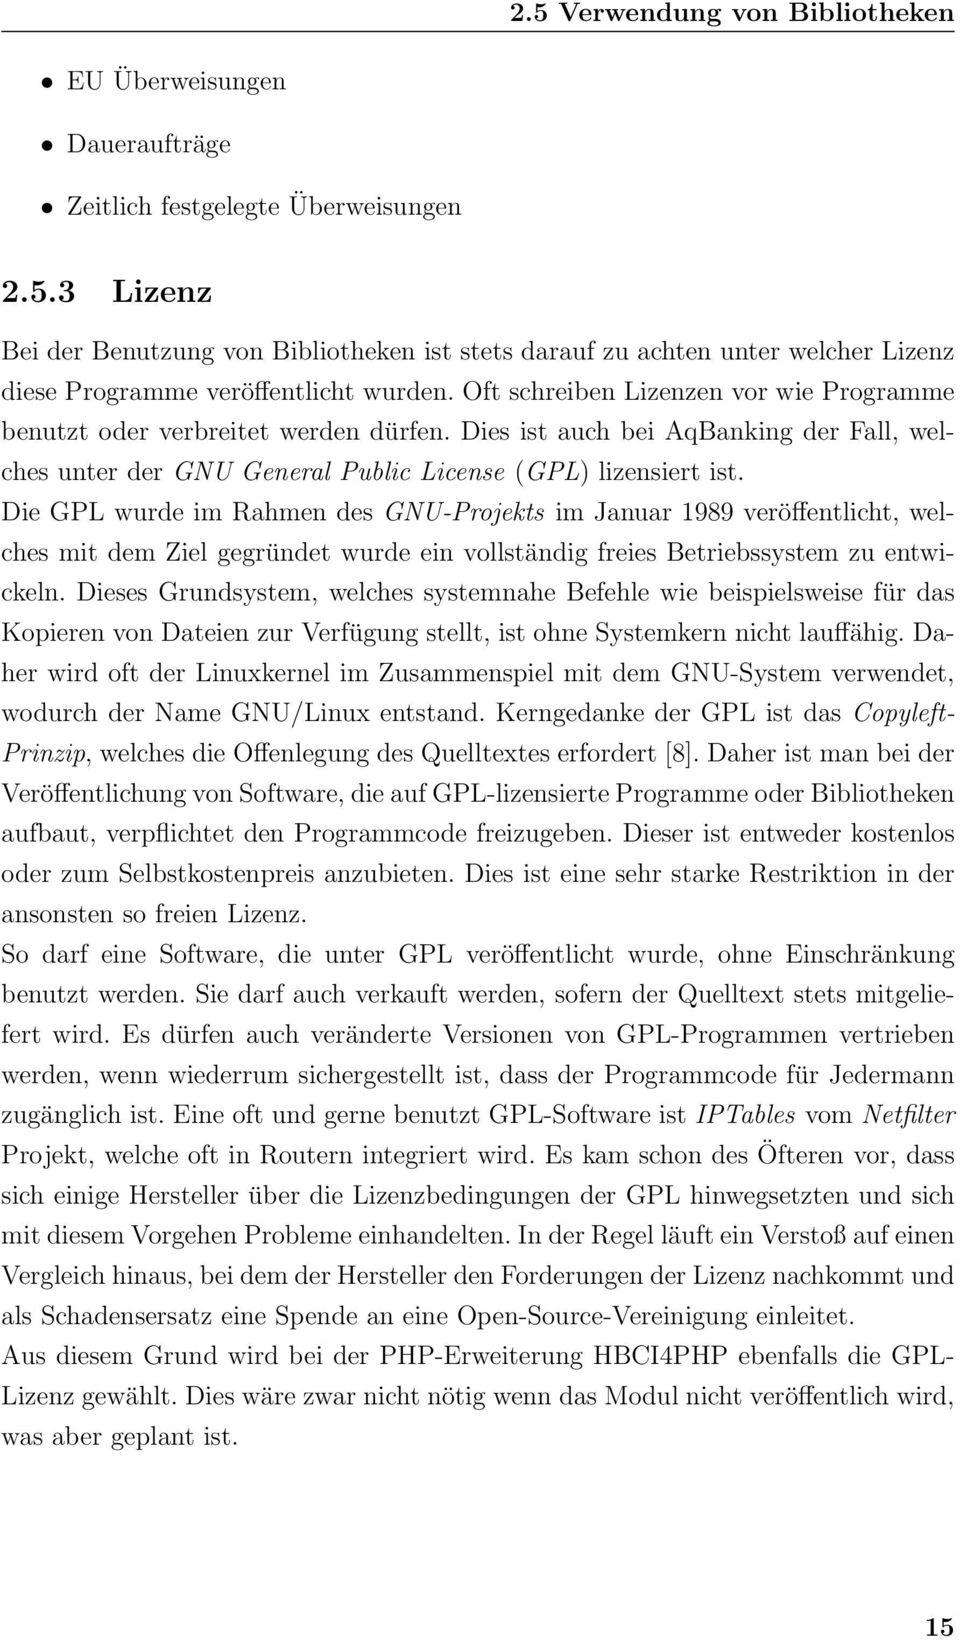 Die GPL wurde im Rahmen des GNU-Projekts im Januar 1989 veröffentlicht, welches mit dem Ziel gegründet wurde ein vollständig freies Betriebssystem zu entwickeln.